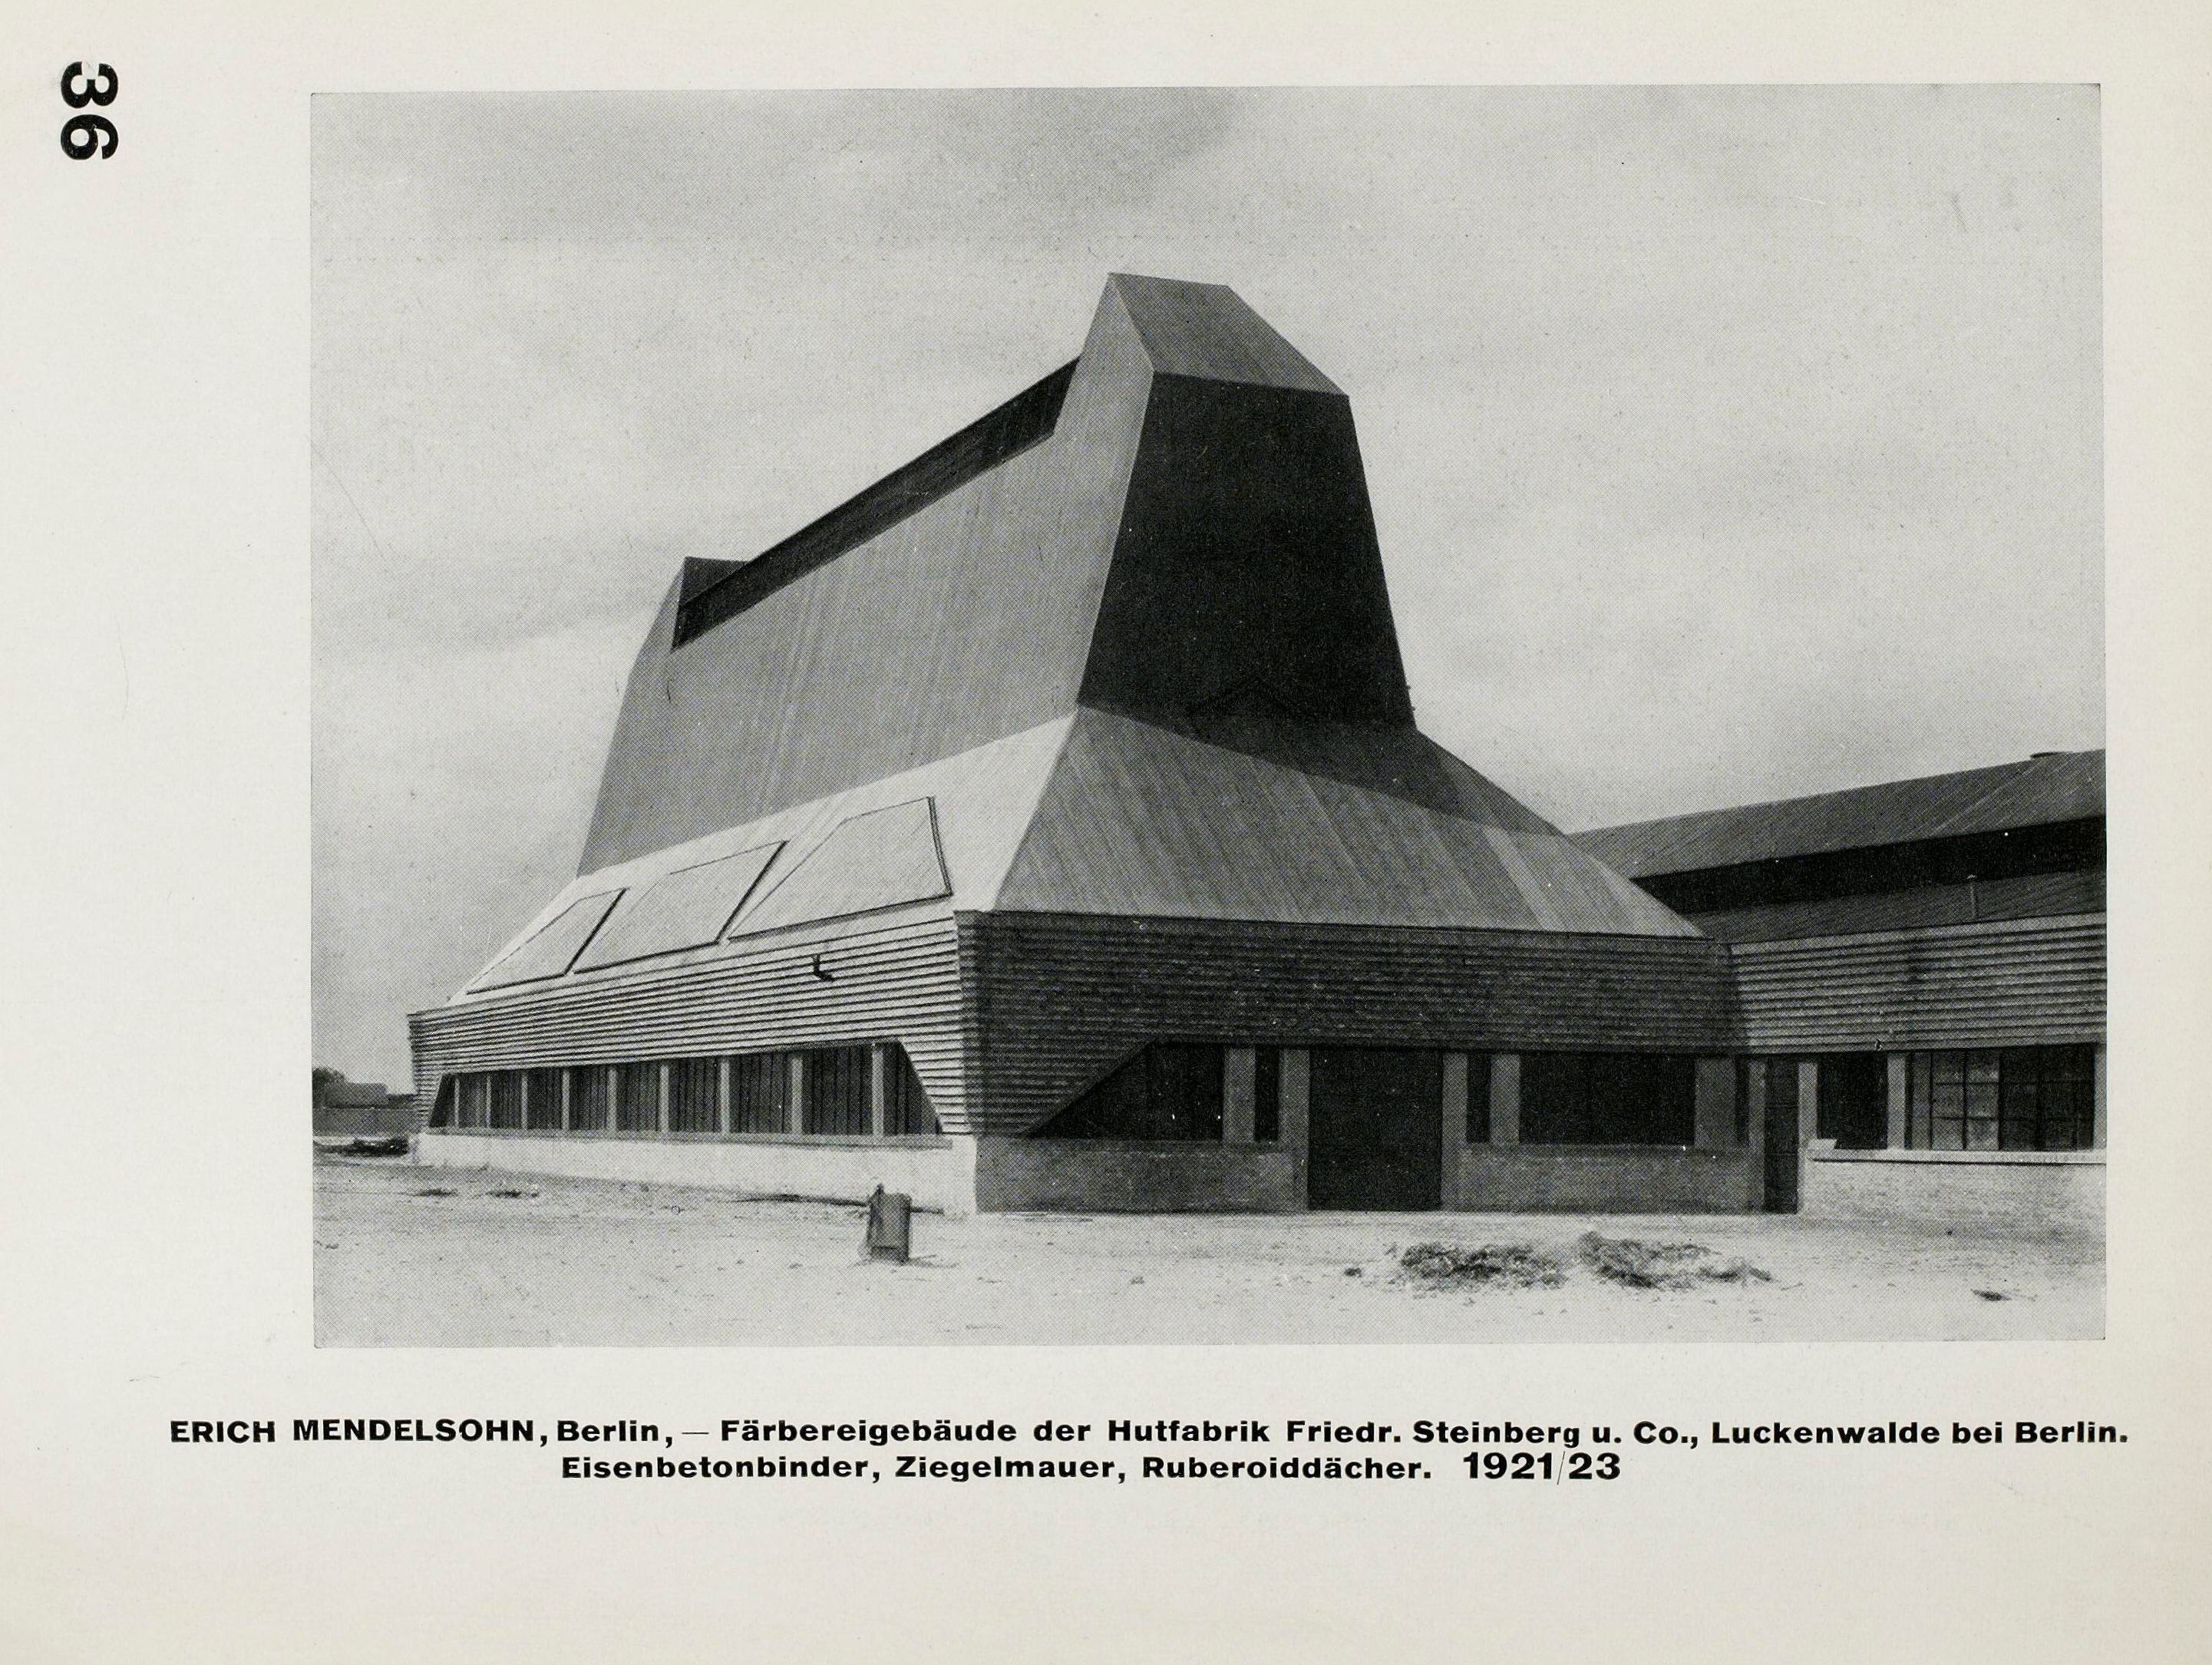 Internationale Architektur / von Walter Gropius. — Zweite veränderte auflage. — München : Albert Langen Verlag, 1927. — 111 s., ill. — (Bauhausbücher 1)